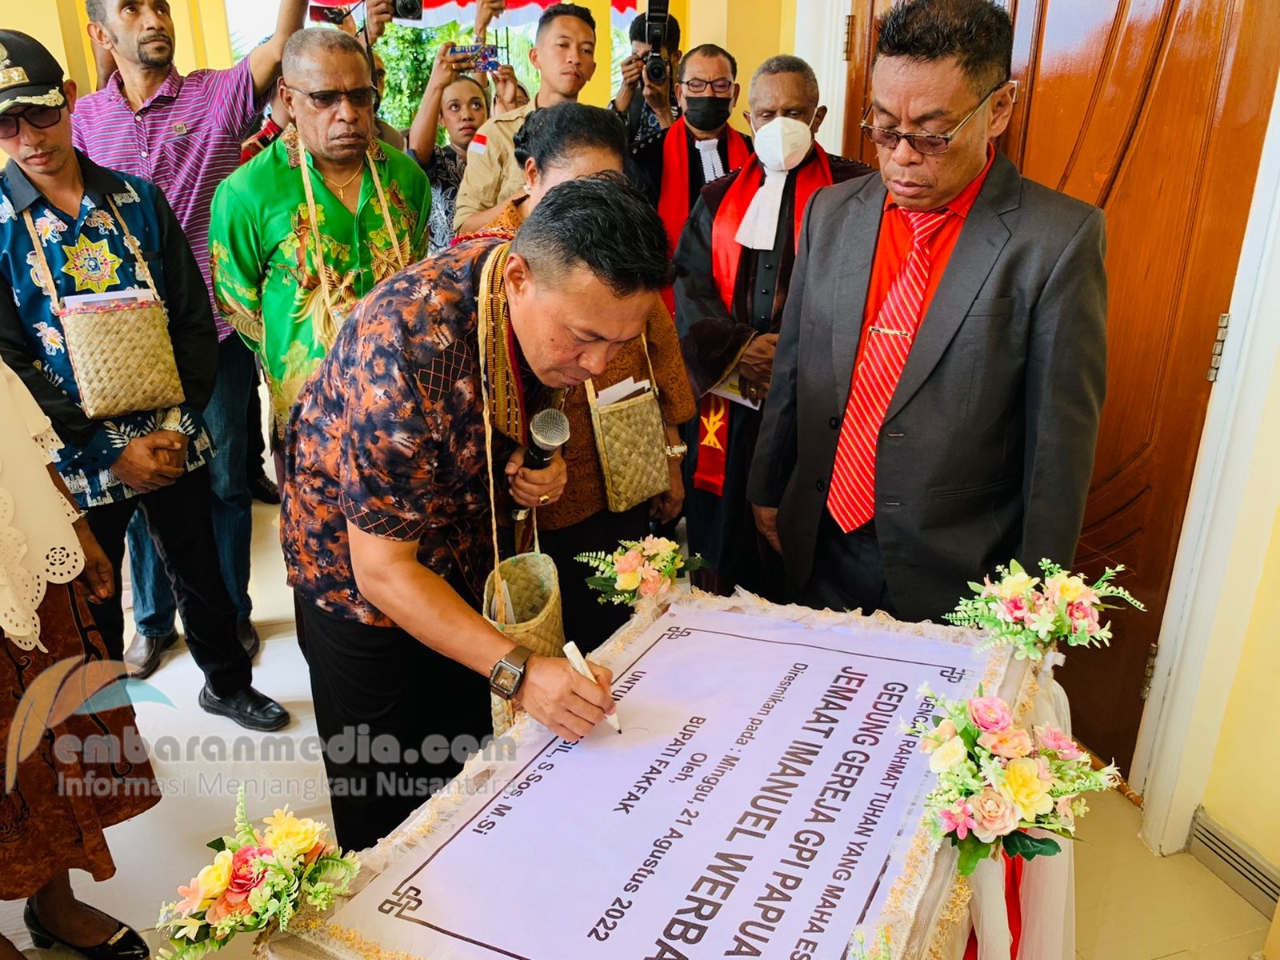 Ditandai Penandatanganan Prasasti, Bupati Fakfak Resmikan Gedung Gereja Jemaat GPI Papua Imanuel Werba